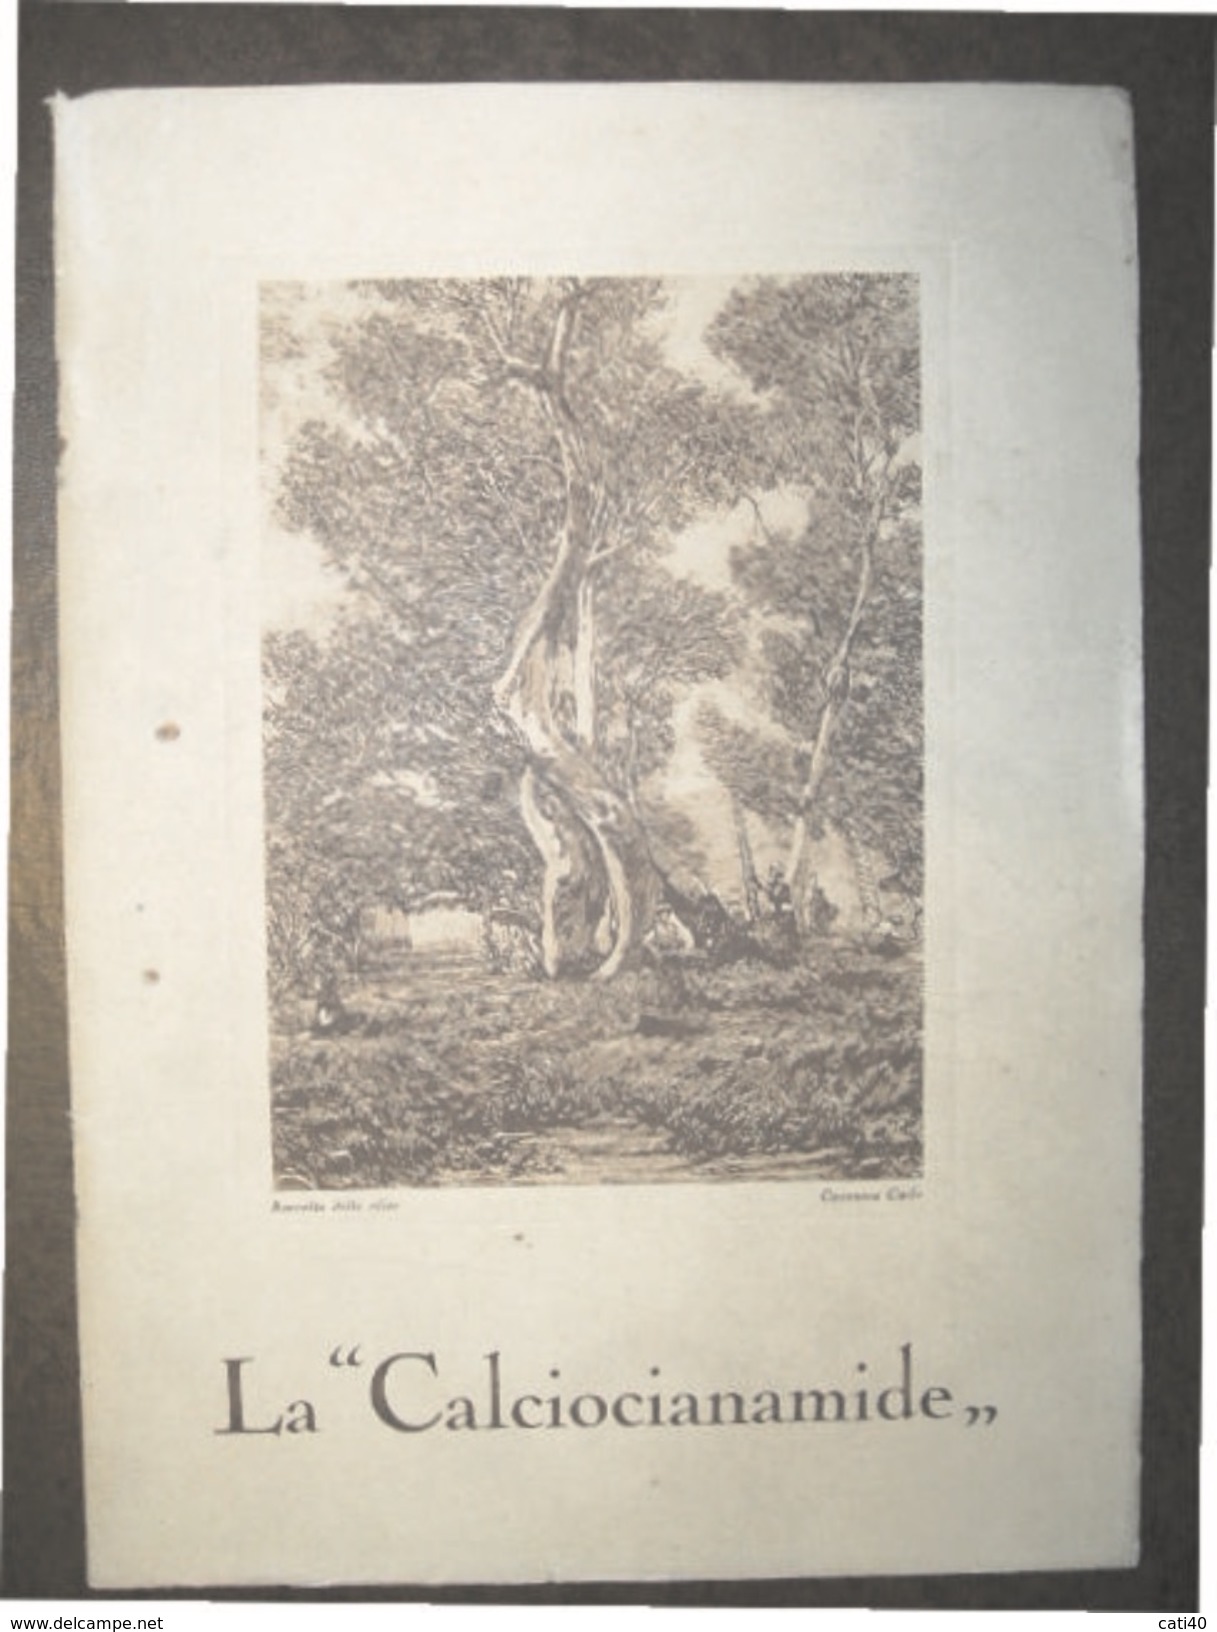 AGRICOLTURA  LA "CALCIOCIANAMIDE"  PROF.F.ZAGO - DR.S.GADDINI  TIP. RIZZOLI 1926 STAMPA RACCOLTA DELLE OLIVE DI CASANOVA - Giardinaggio